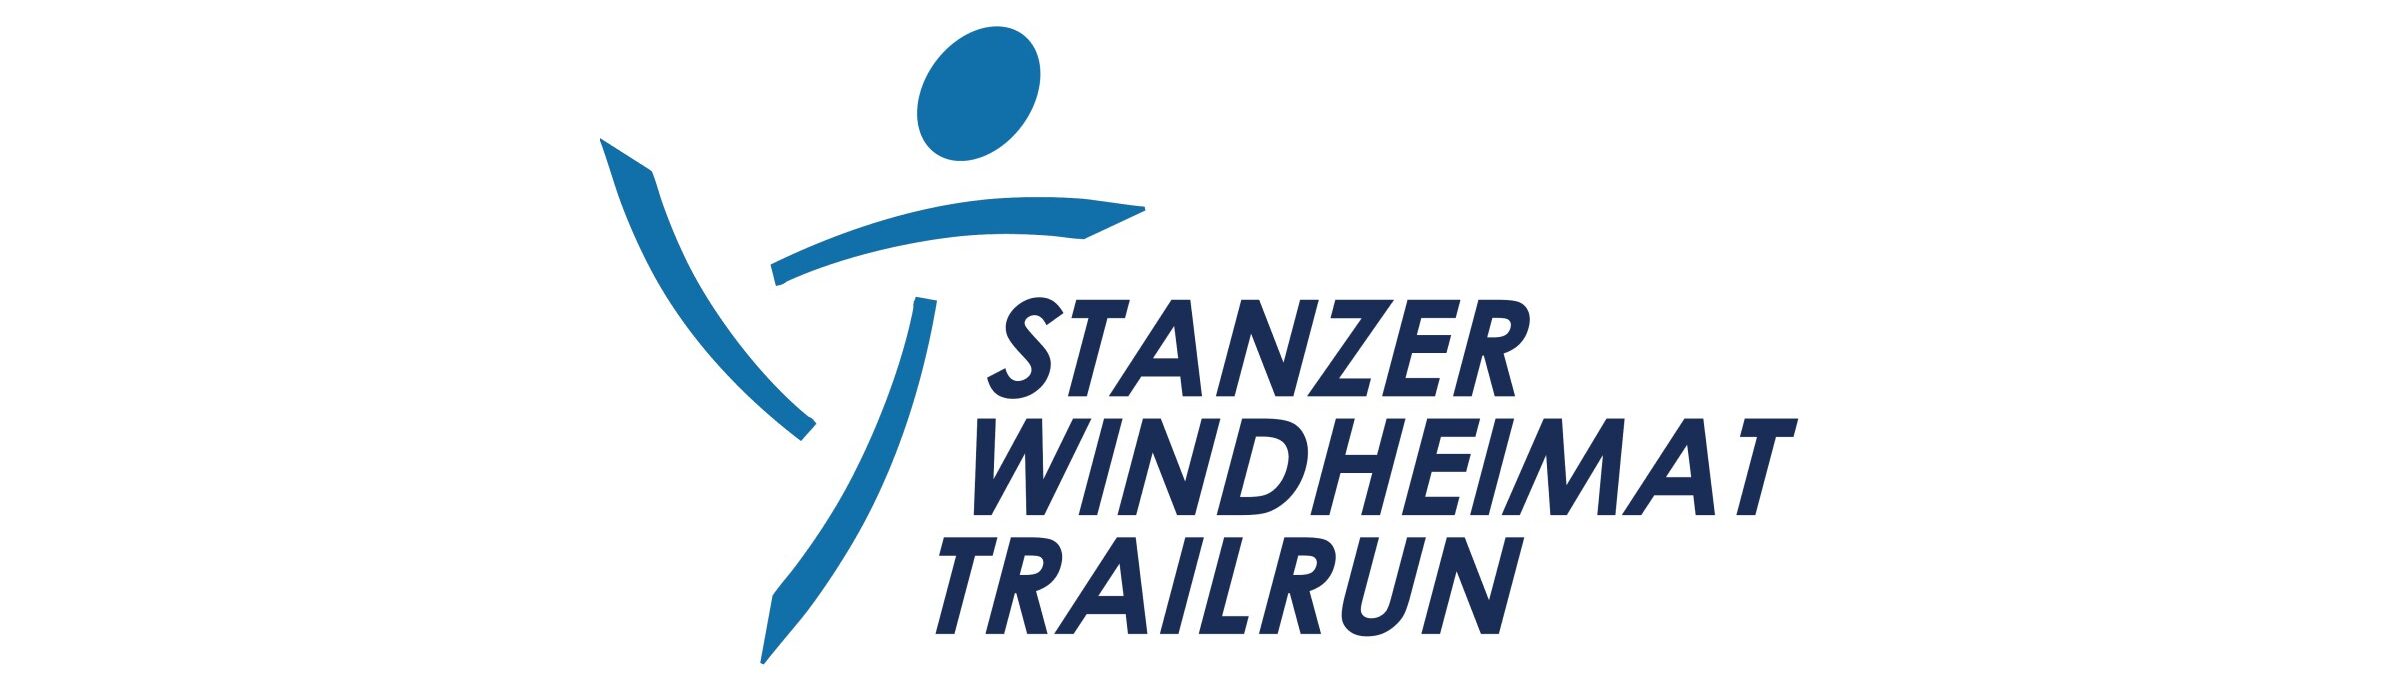 13. Stanzer Windheimat Trailrun